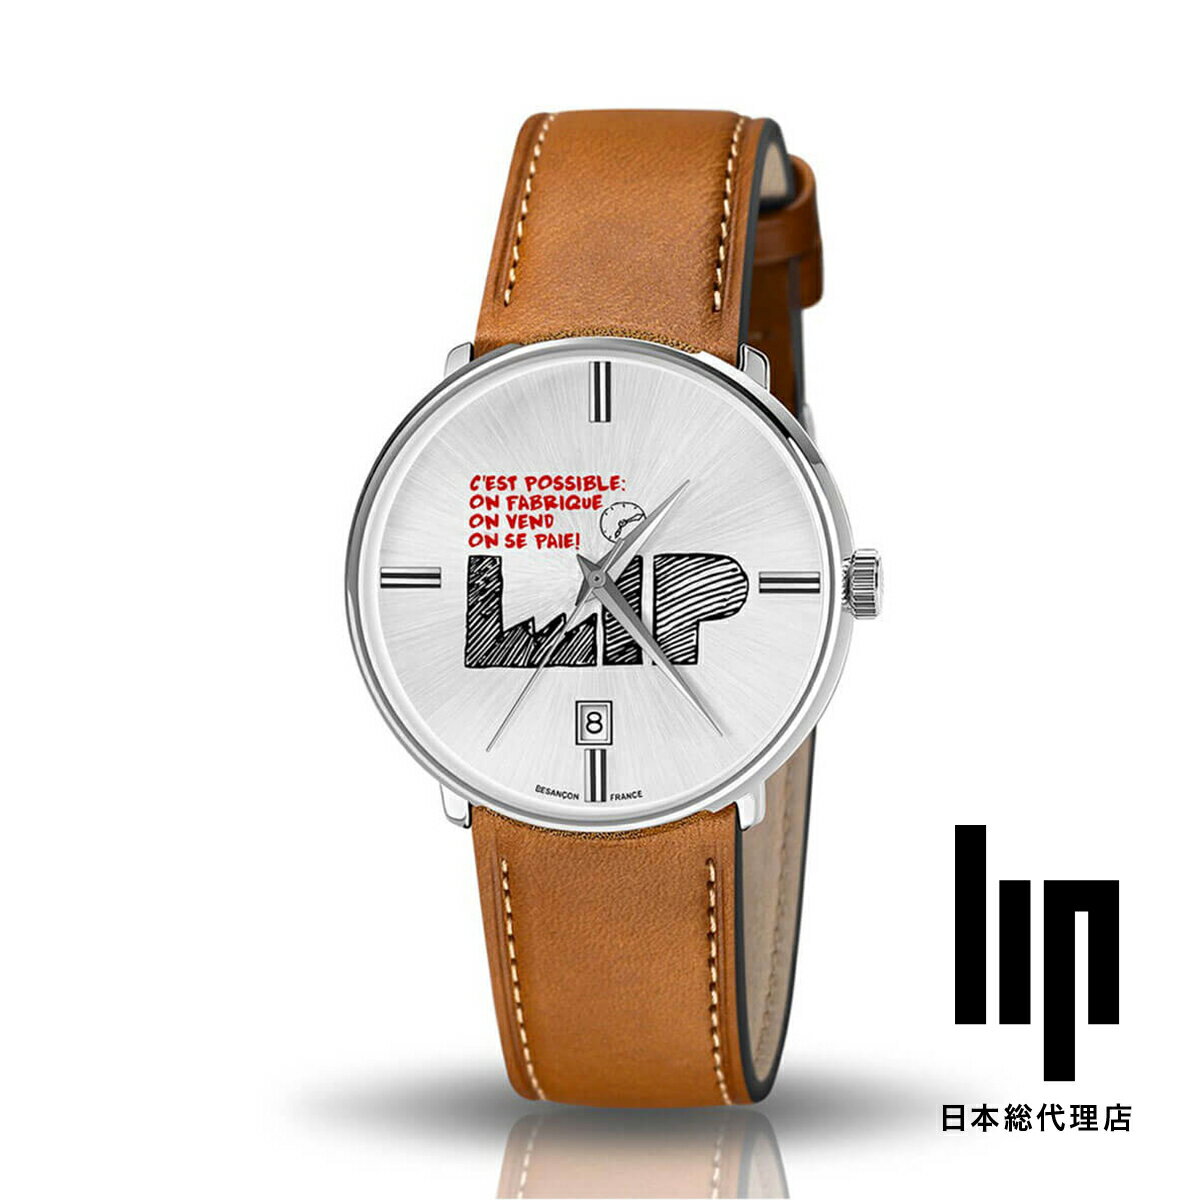 リップ LIP 日本公式ストア セ・ポッシブル シルバー ブラウンレザー 腕時計 レディース ブランド